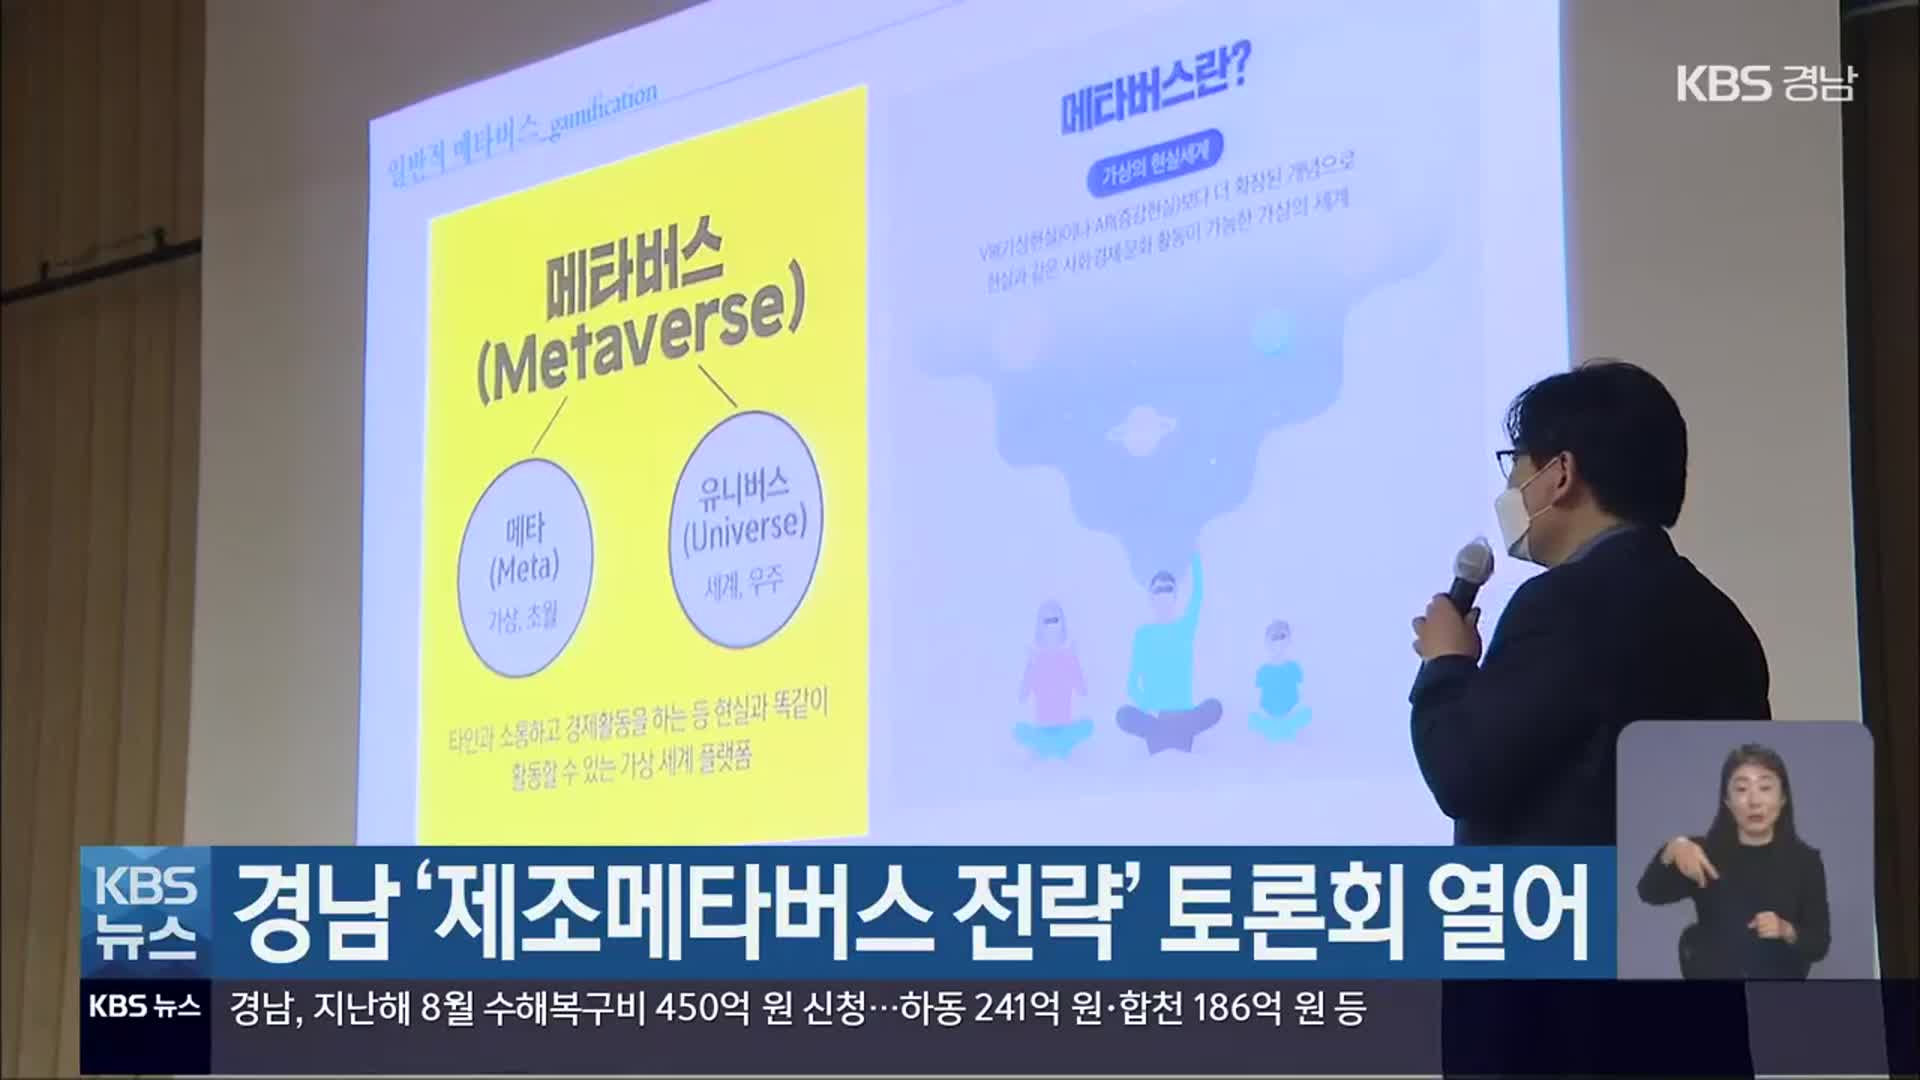 경남 ‘제조메타버스 전략’ 토론회 열어